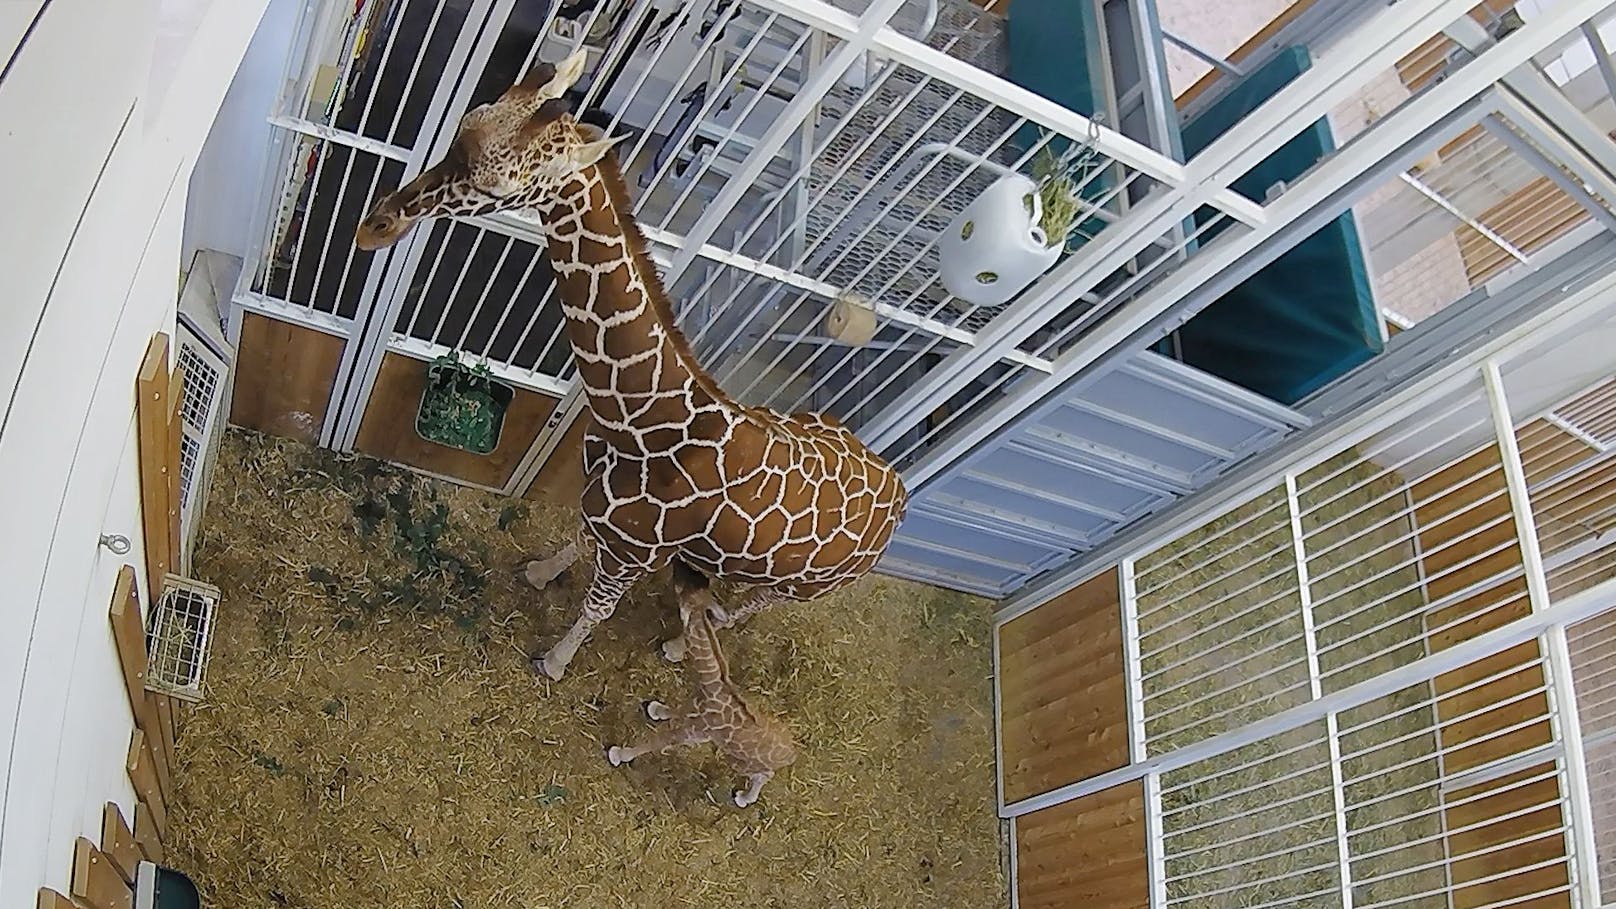 Zur der großen Freude eines langersehnten Giraffennachwuchses, mischte sich auch gleich große Sorge... 